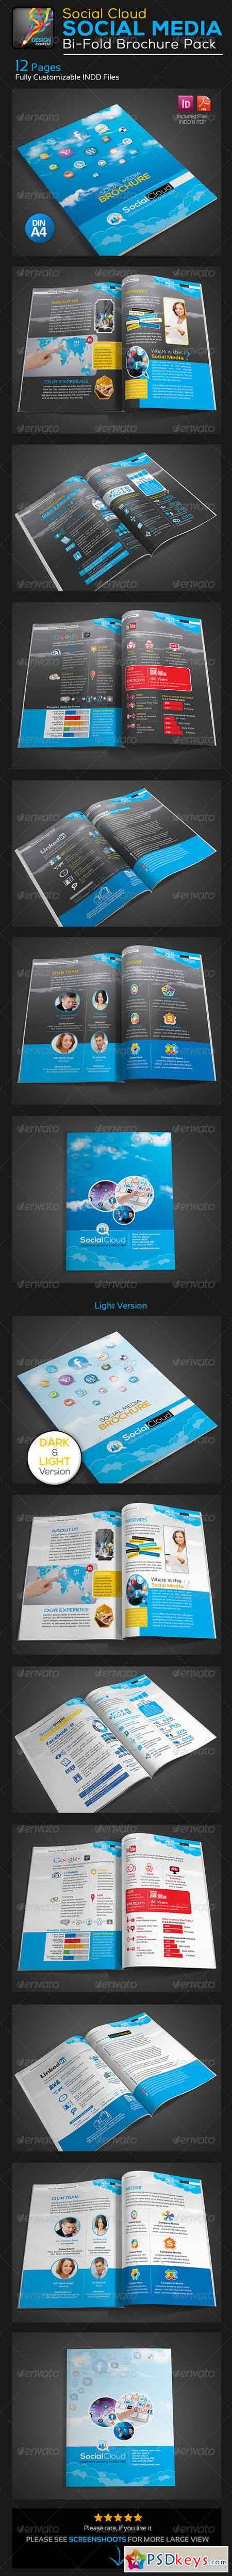 Social Cloud Social Media 12 Pages Brochure 5742910